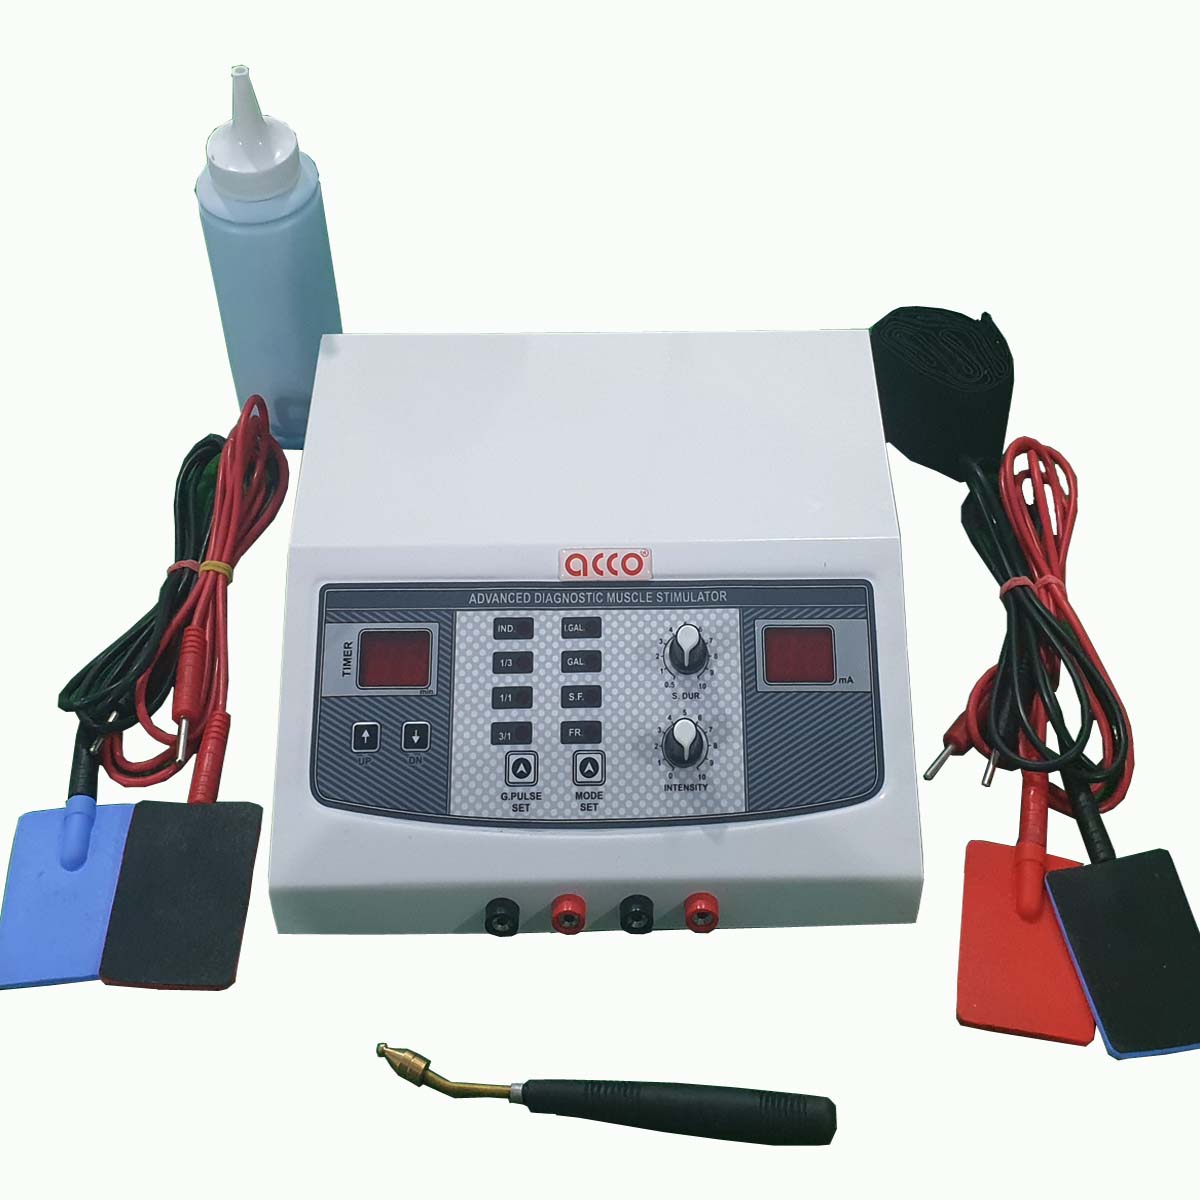 acco Muscle Stimulator Machine (Diagnostic - G, IG,F,SF)